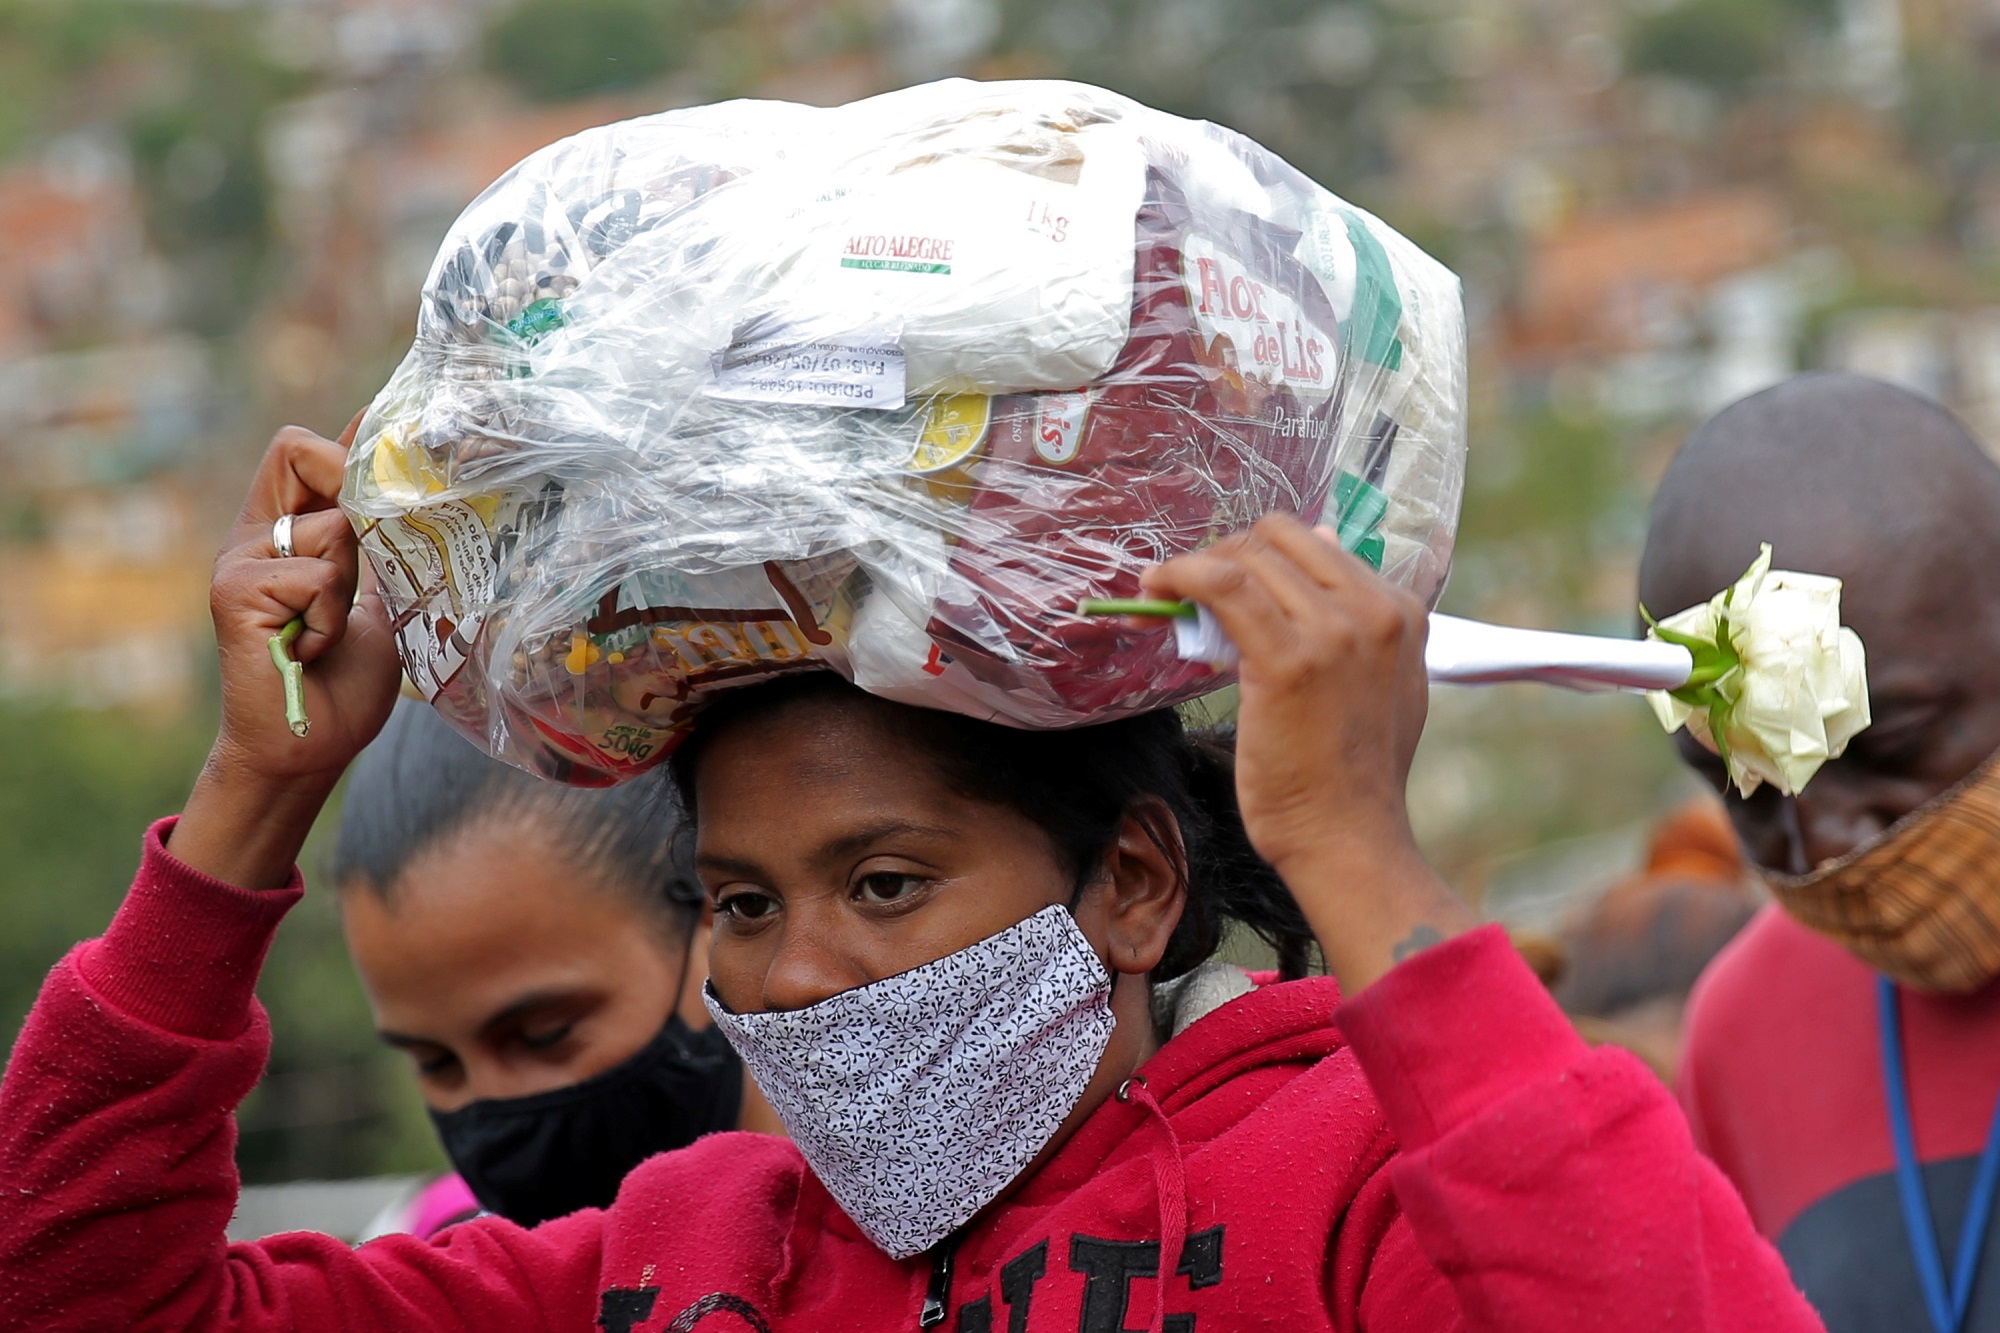 امرأة ترتدي كمامة وتحمل كيسا بلاستيكيا به معونة غذائية وزعته منظمة غير حكومية، وسط تفشي فيروس كورونا في البرازيل، 13 أيار/مايو 2021. (رويترز / كارلا كارنيل)